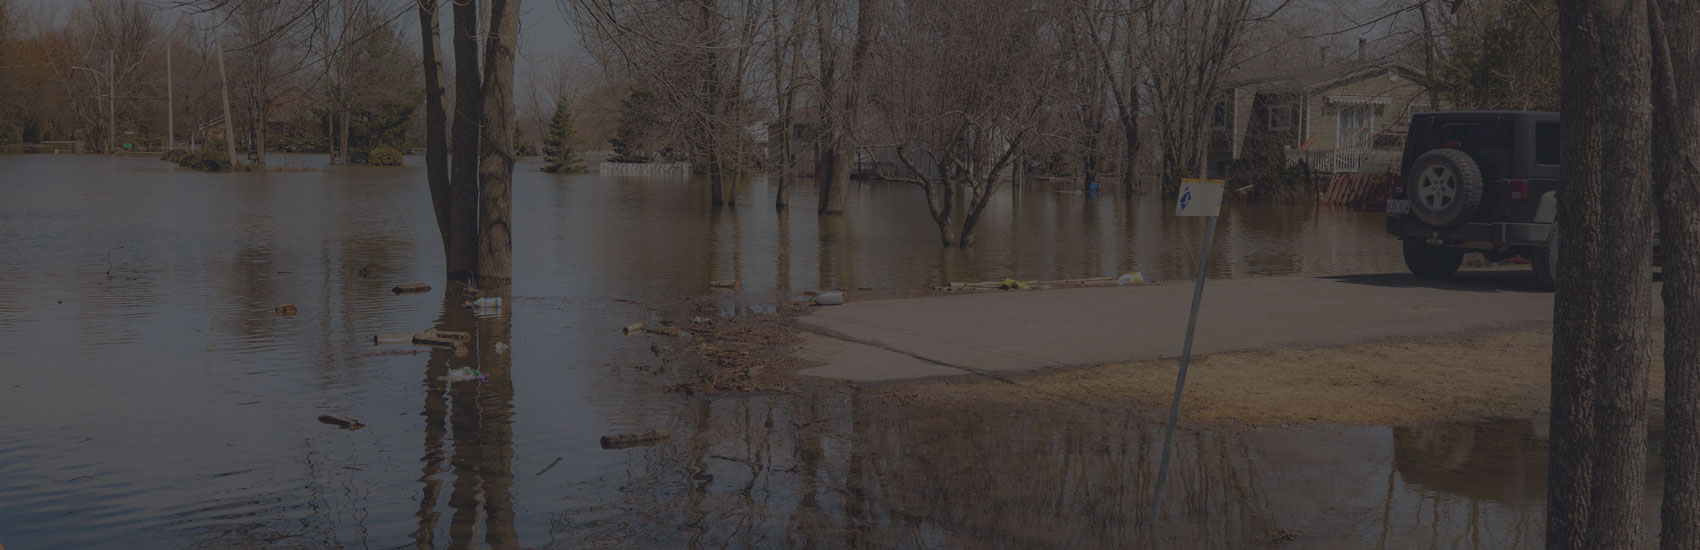 Inondations : Vaudreuil-Dorion demande de vérifier sa pompe